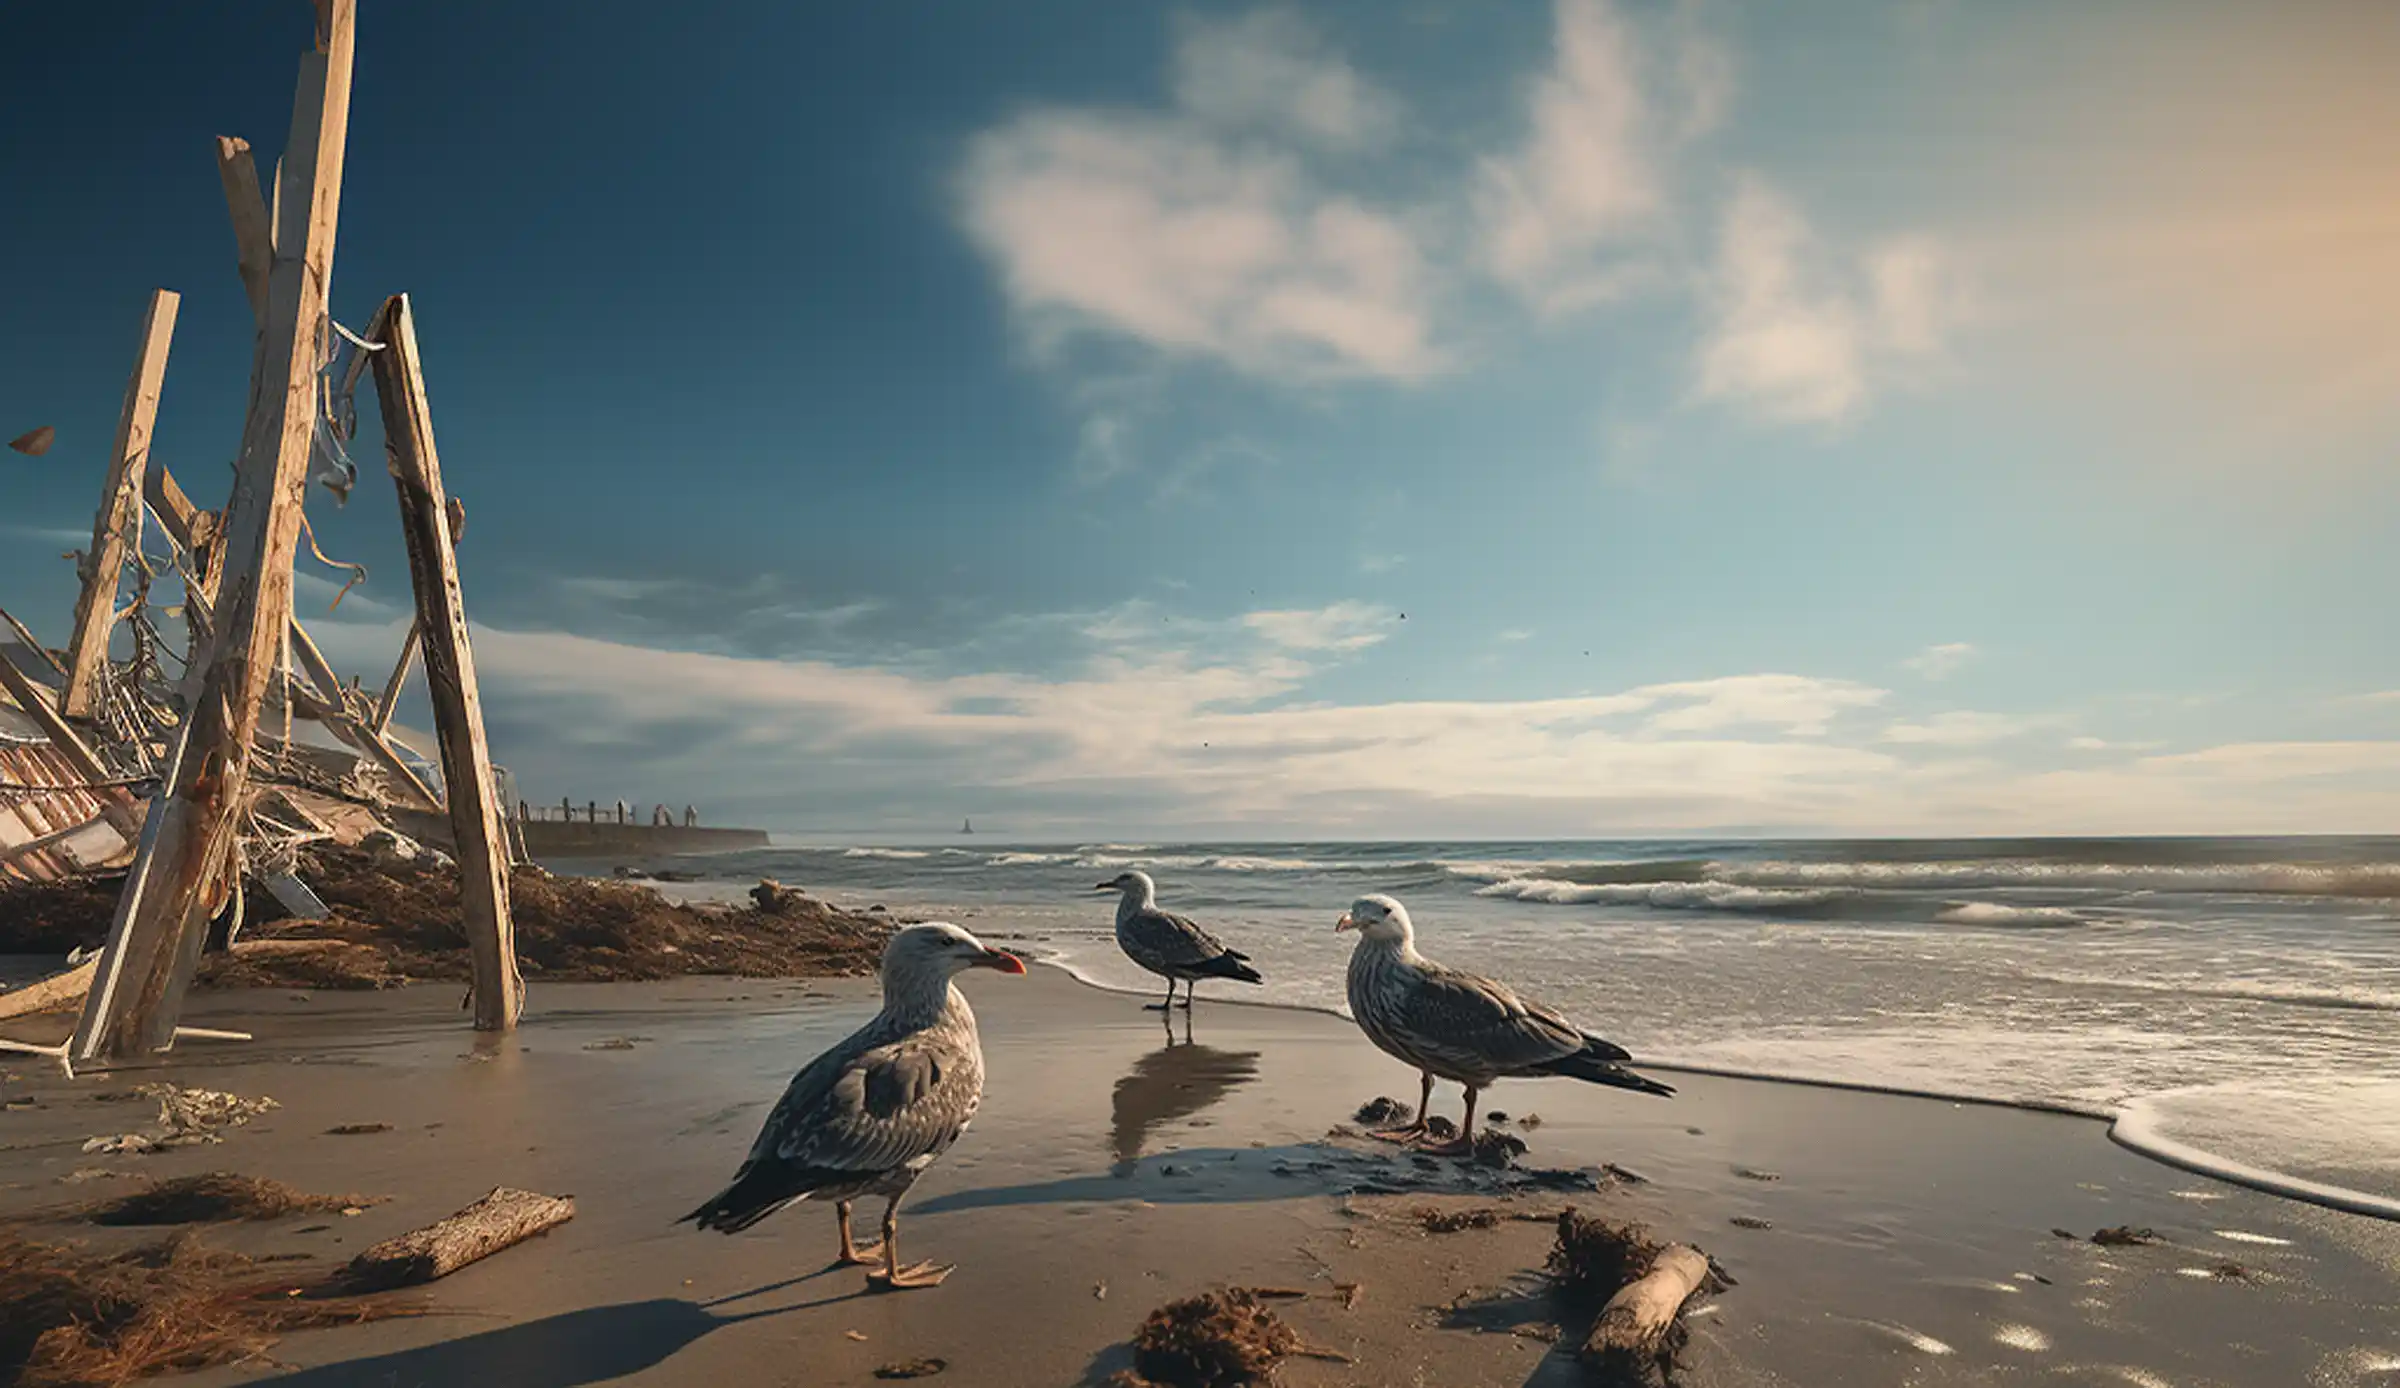 Vögel in Freiheit an der US-Küste beobachtet von Schriftsteller Jonathan Franzen. Bildbearbeitung mit Korrekturen